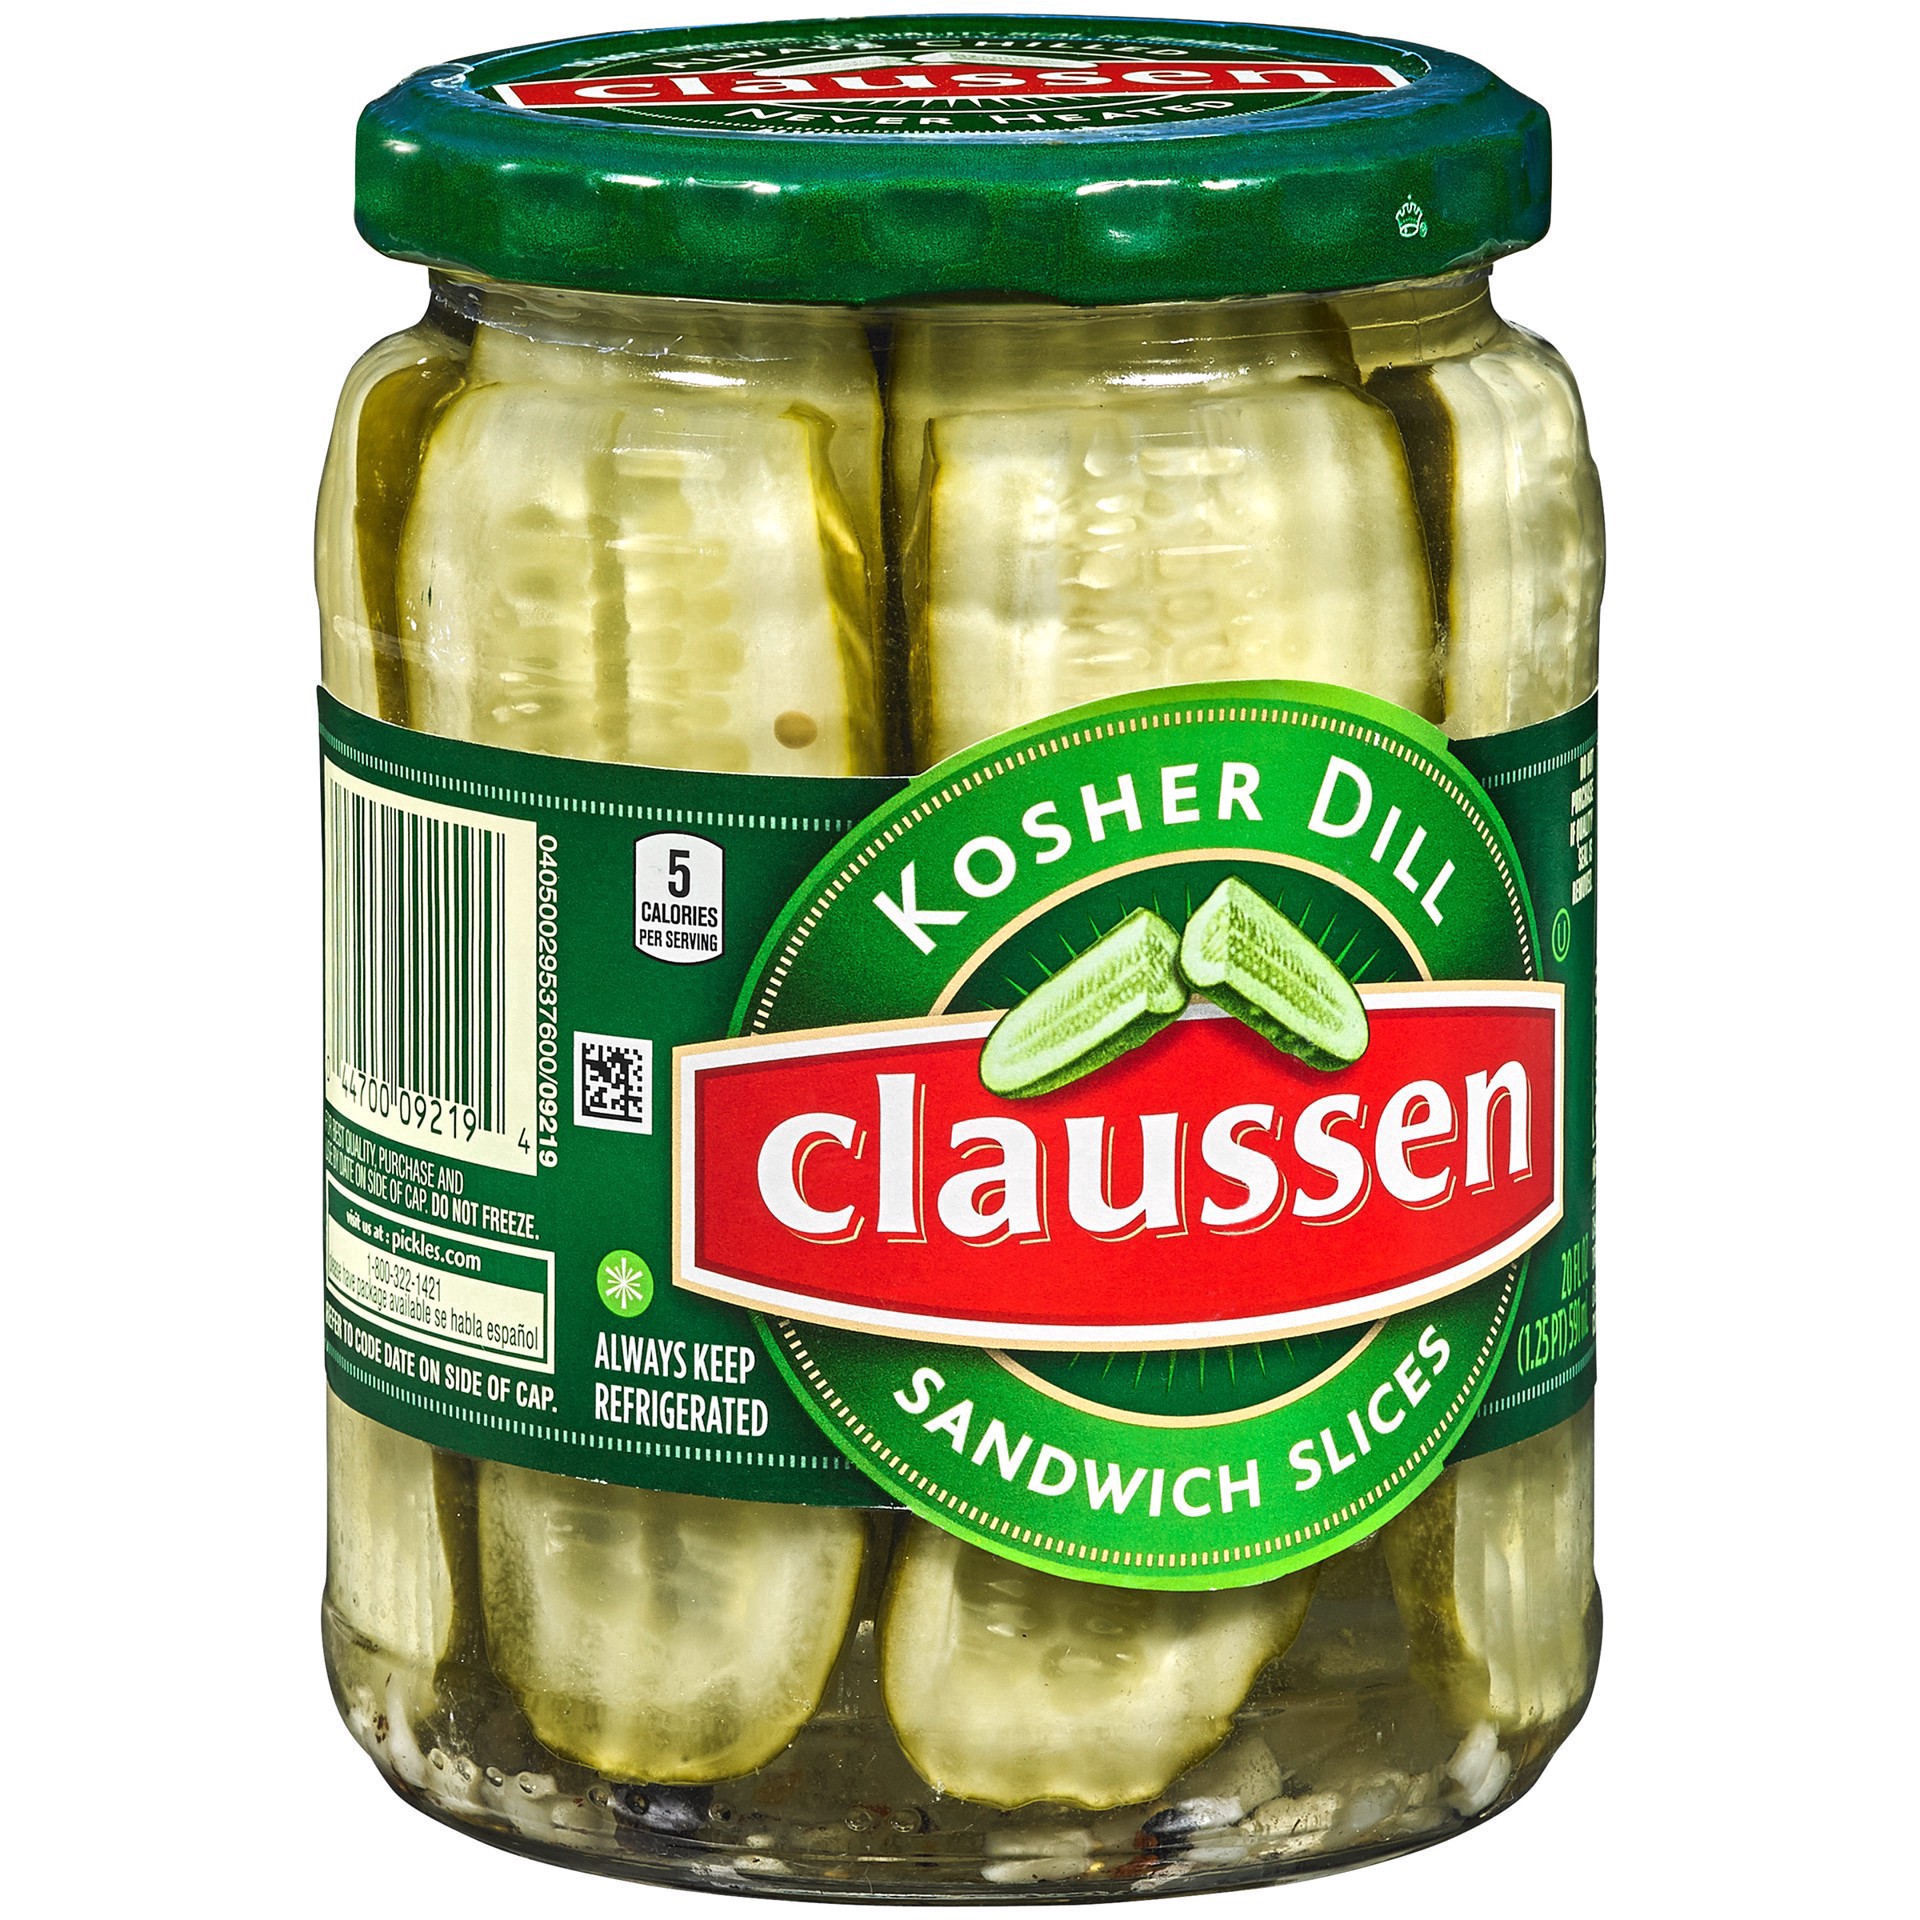 slide 46 of 144, Claussen Kosher Dill Pickle Sandwich Slices, 20 fl. oz. Jar, 20 fl oz